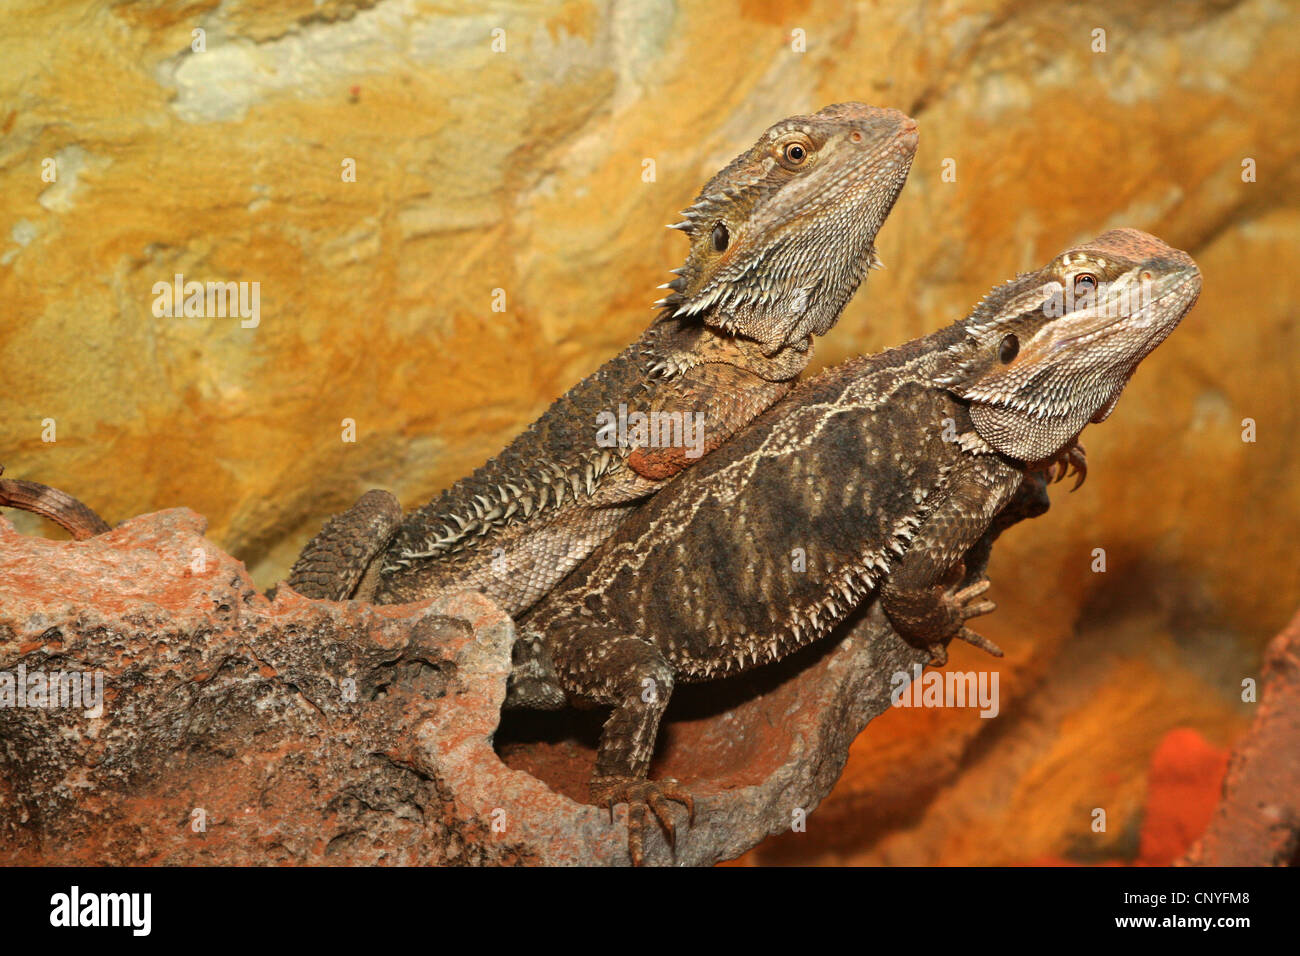 bearded dragon (Amphibolurus barbatus, Pogona barbatus), two bearded dragons on a stone Stock Photo